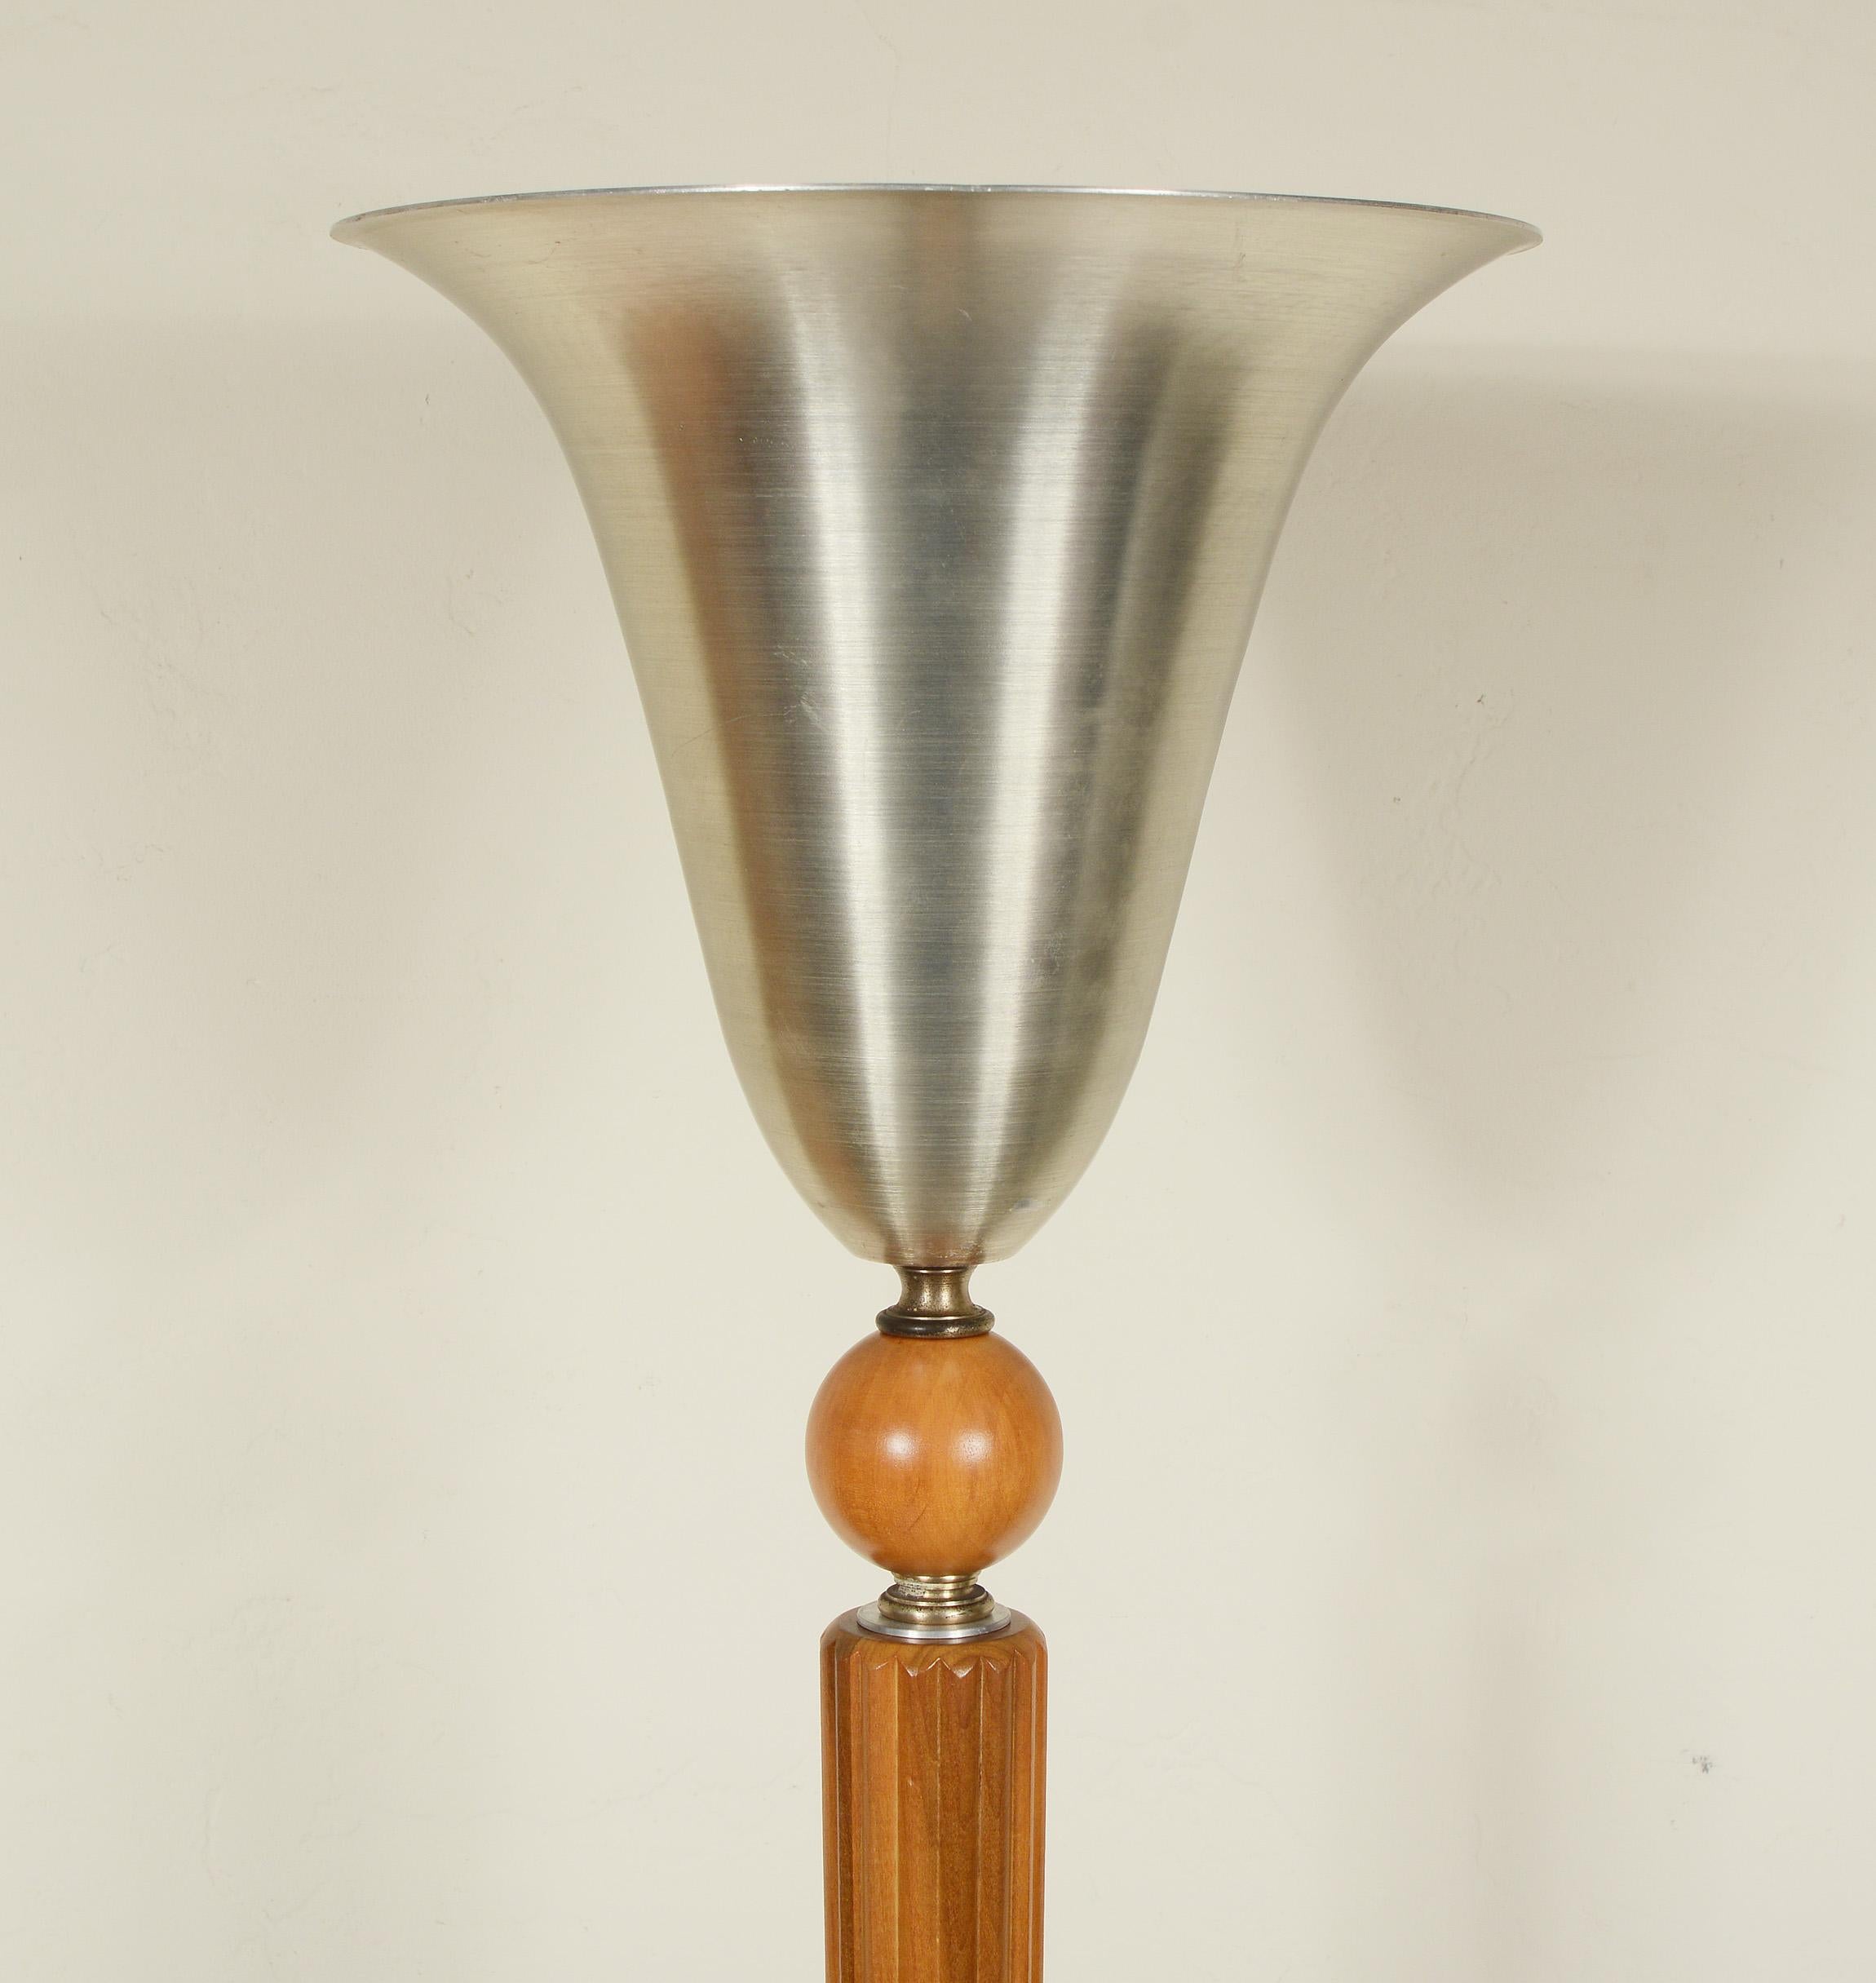 Moderne Art Deco Fackel von Marbro Lamp Co. Diese Lampe hat eine gerippte Holzsäule mit einem Aluminiumschirm und -fuß. Die Leuchte hat eine Dreiwege-Mogulsteckdose. Das Holz ist aufgearbeitet und mit brauner, gedrehter Rayon-Kordel neu verdrahtet